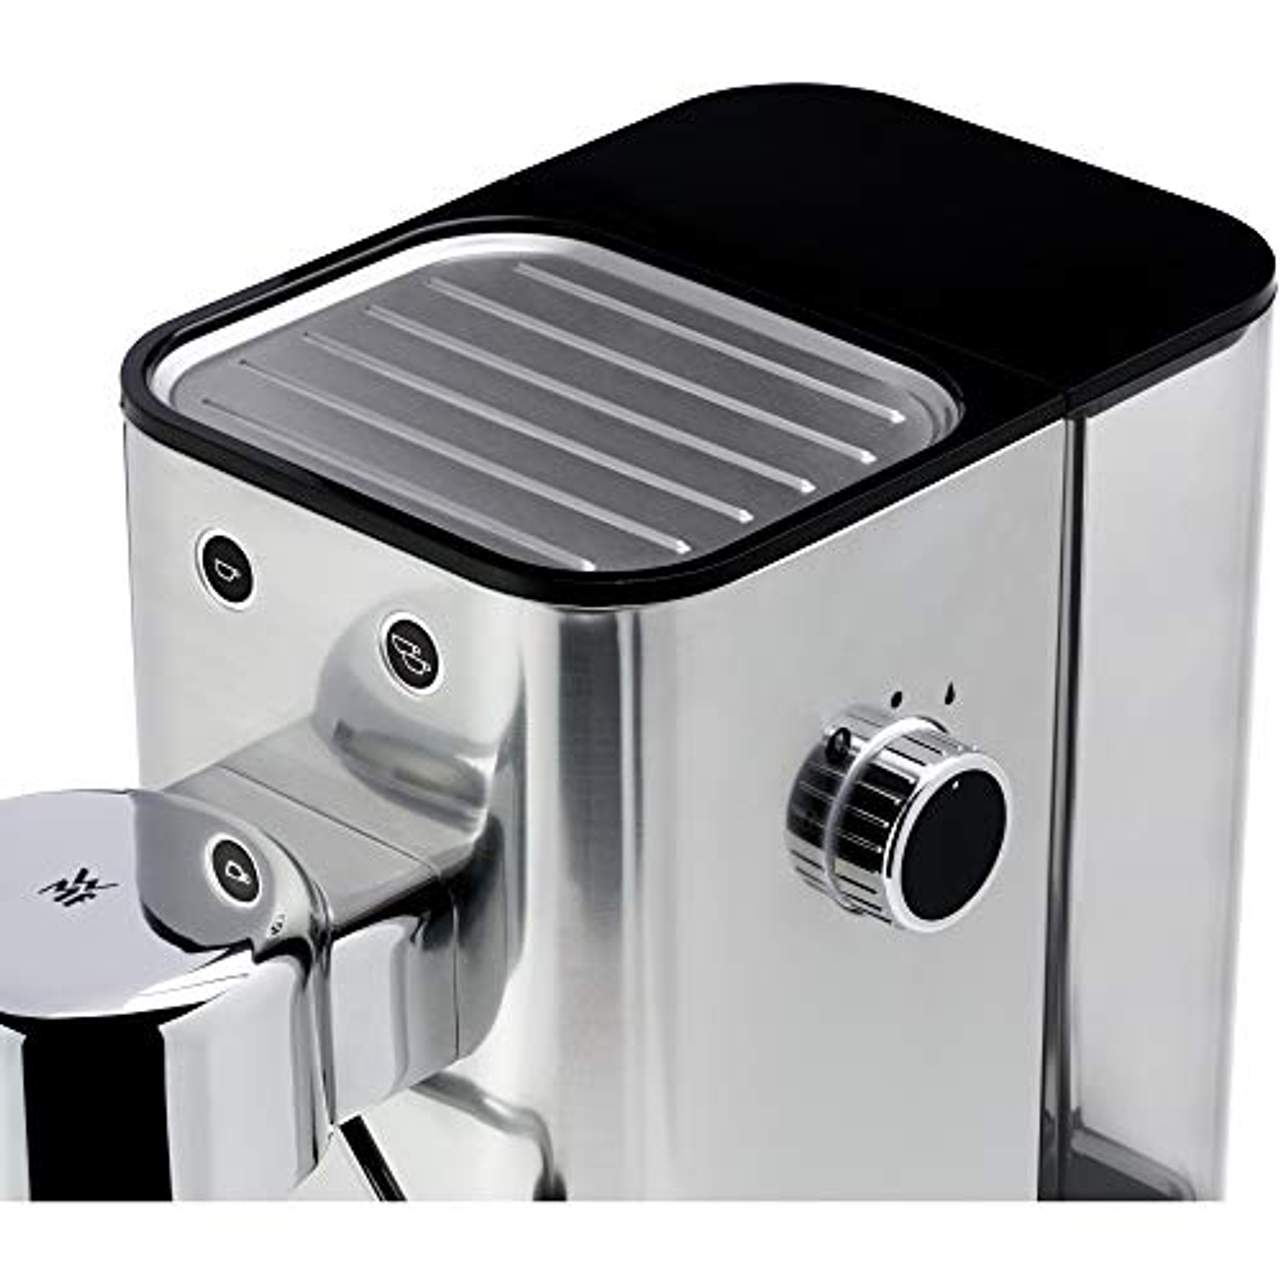 WMF Lumero Siebträger Espressomaschine 1400 Watt